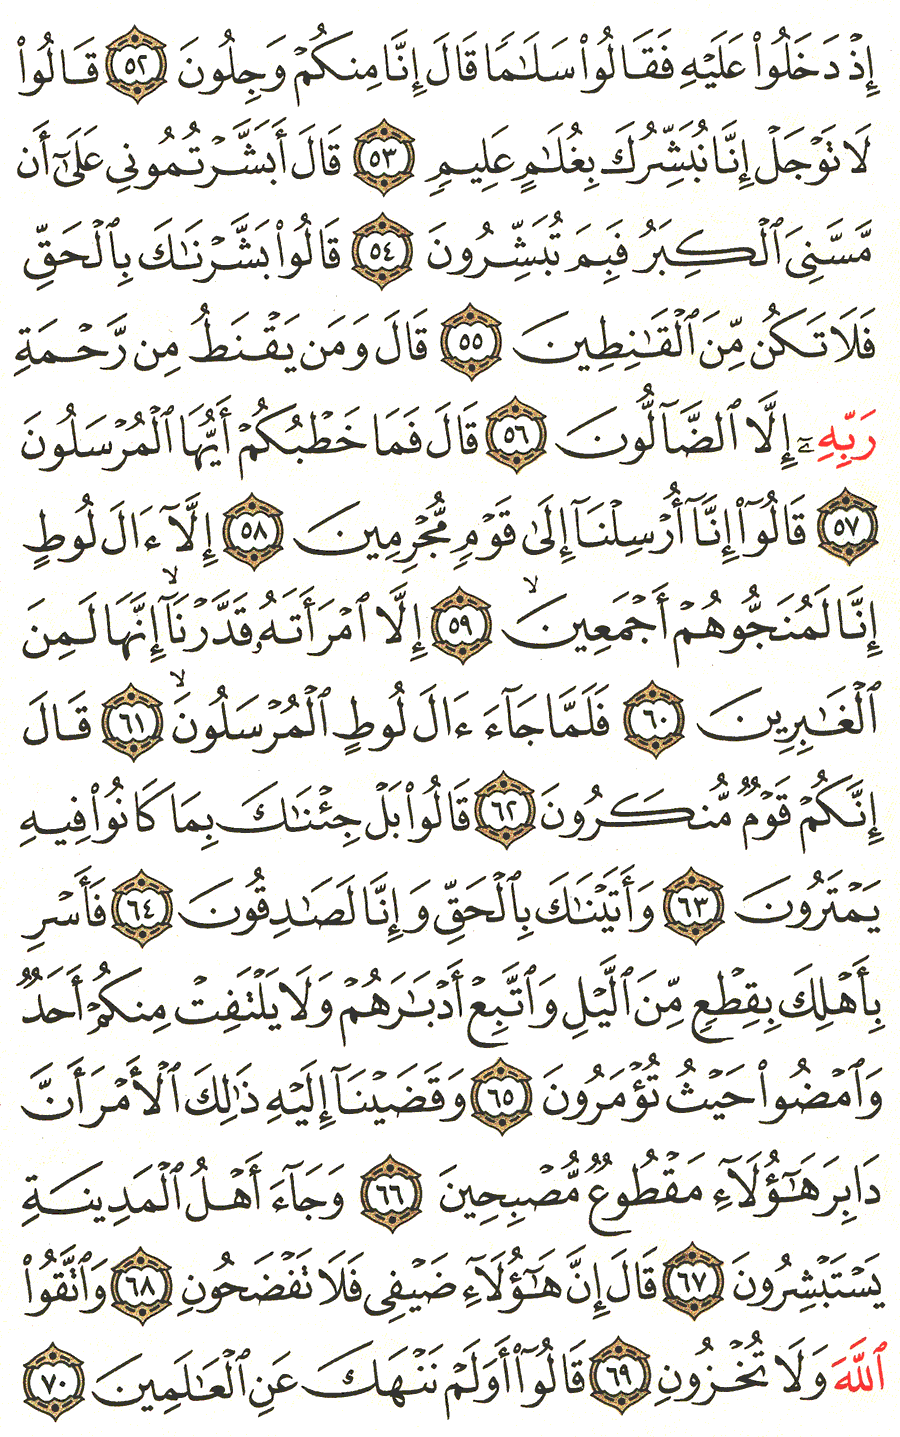 الصفحة رقم 265  من القرآن الكريم مكتوبة من المصحف